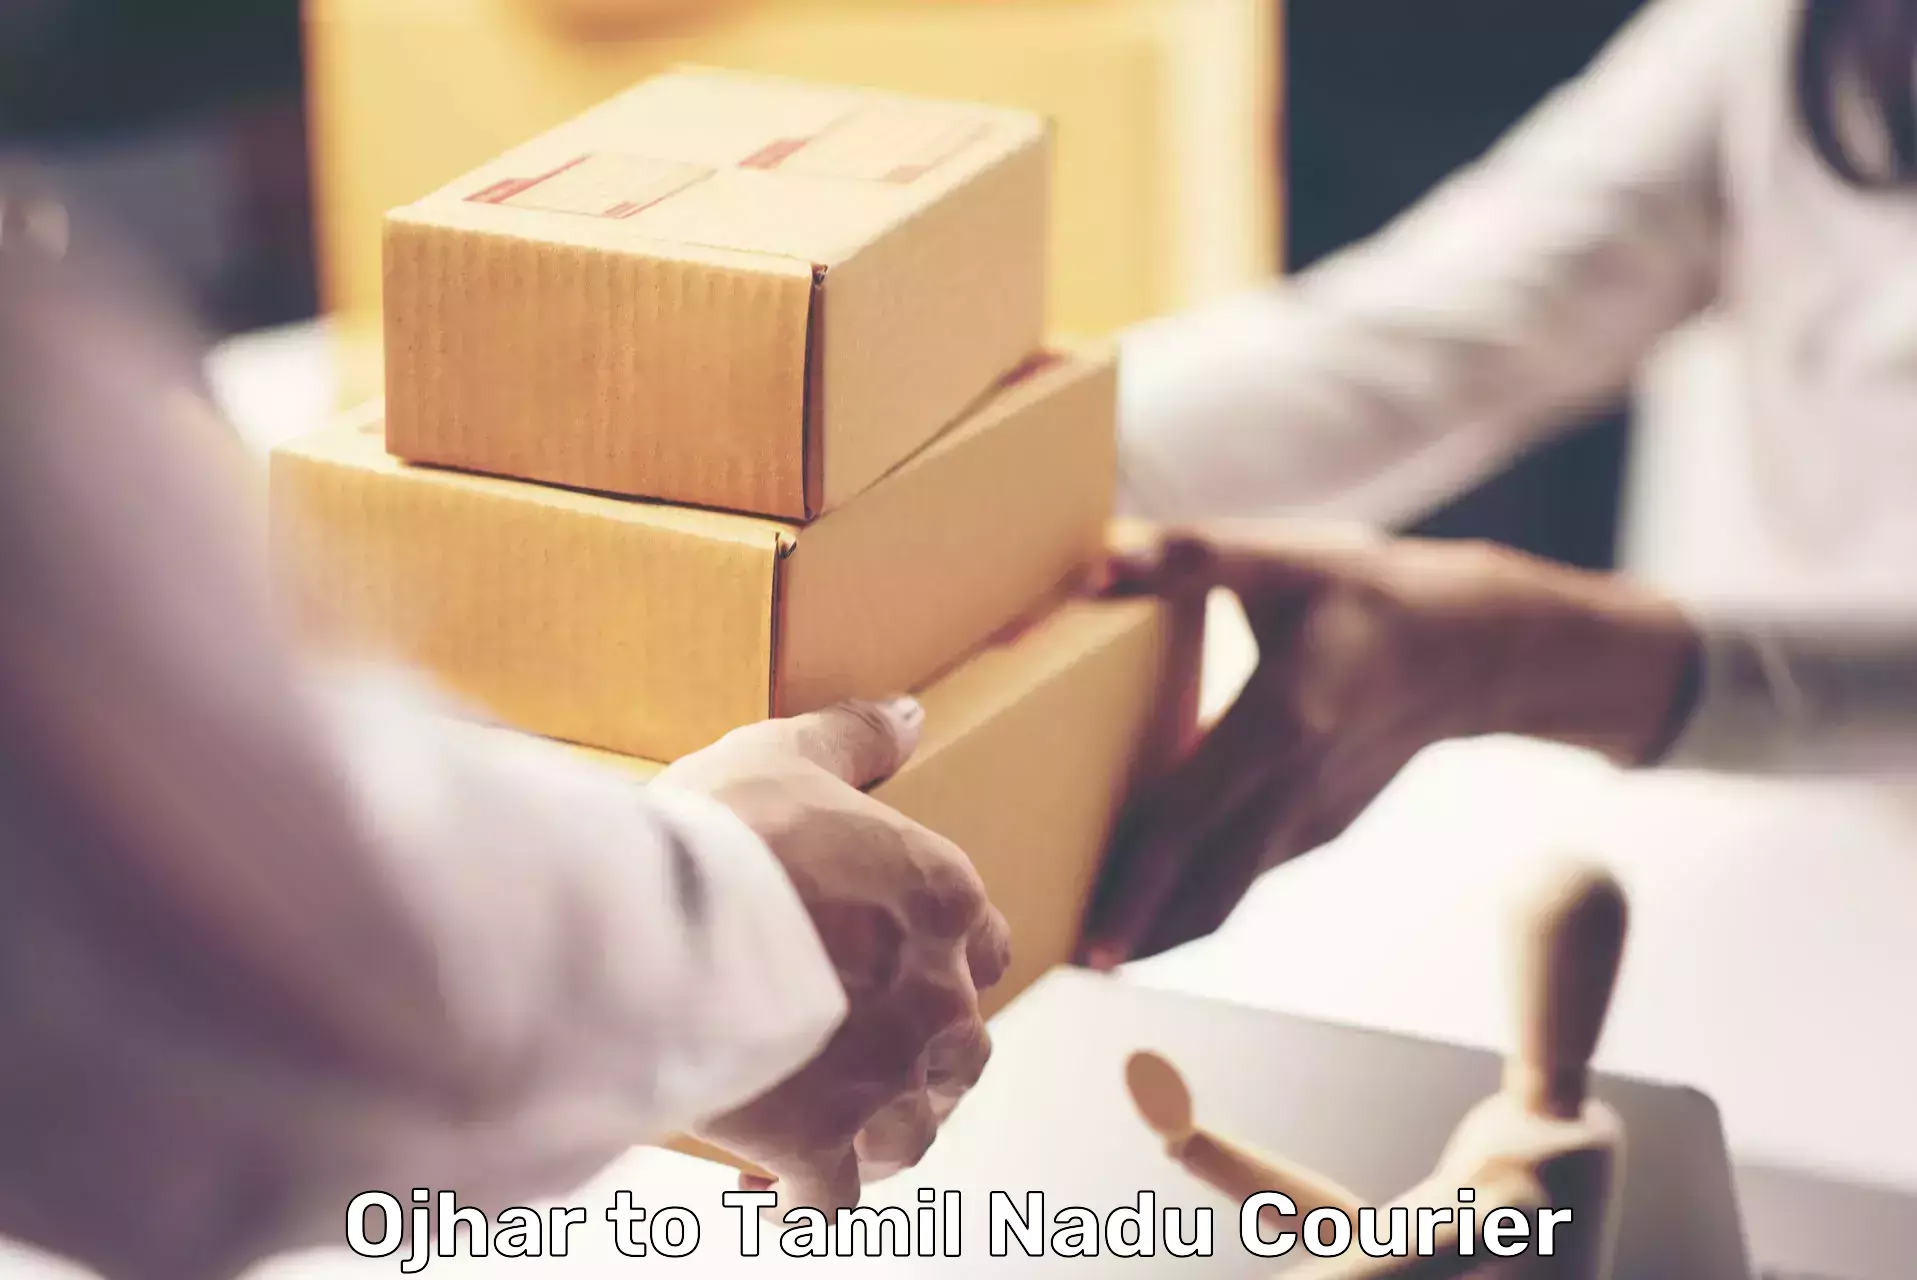 User-friendly delivery service Ojhar to IIIT Tiruchirappalli